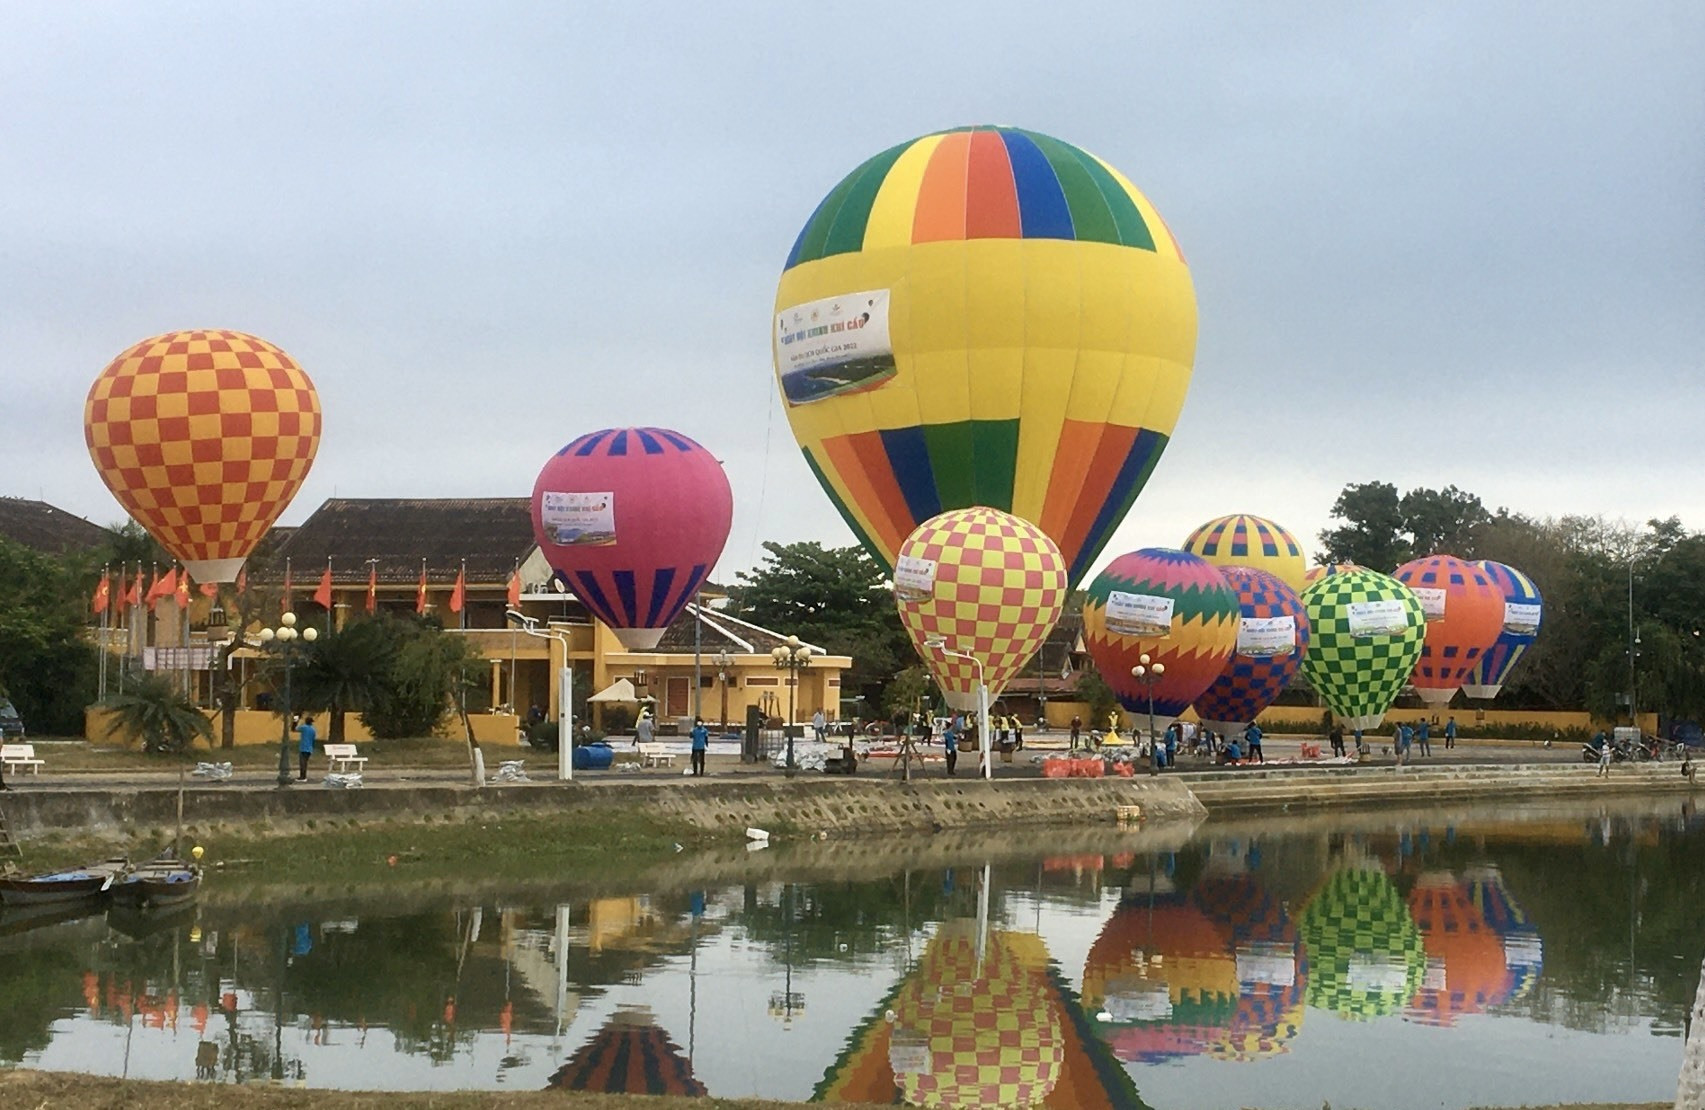 “Ngày hội khinh khí cầu” hứa hẹn mang đến trải nghiệm tuyệt vời cho du khách khi đến Hội An. Ảnh: MỸ LỆ